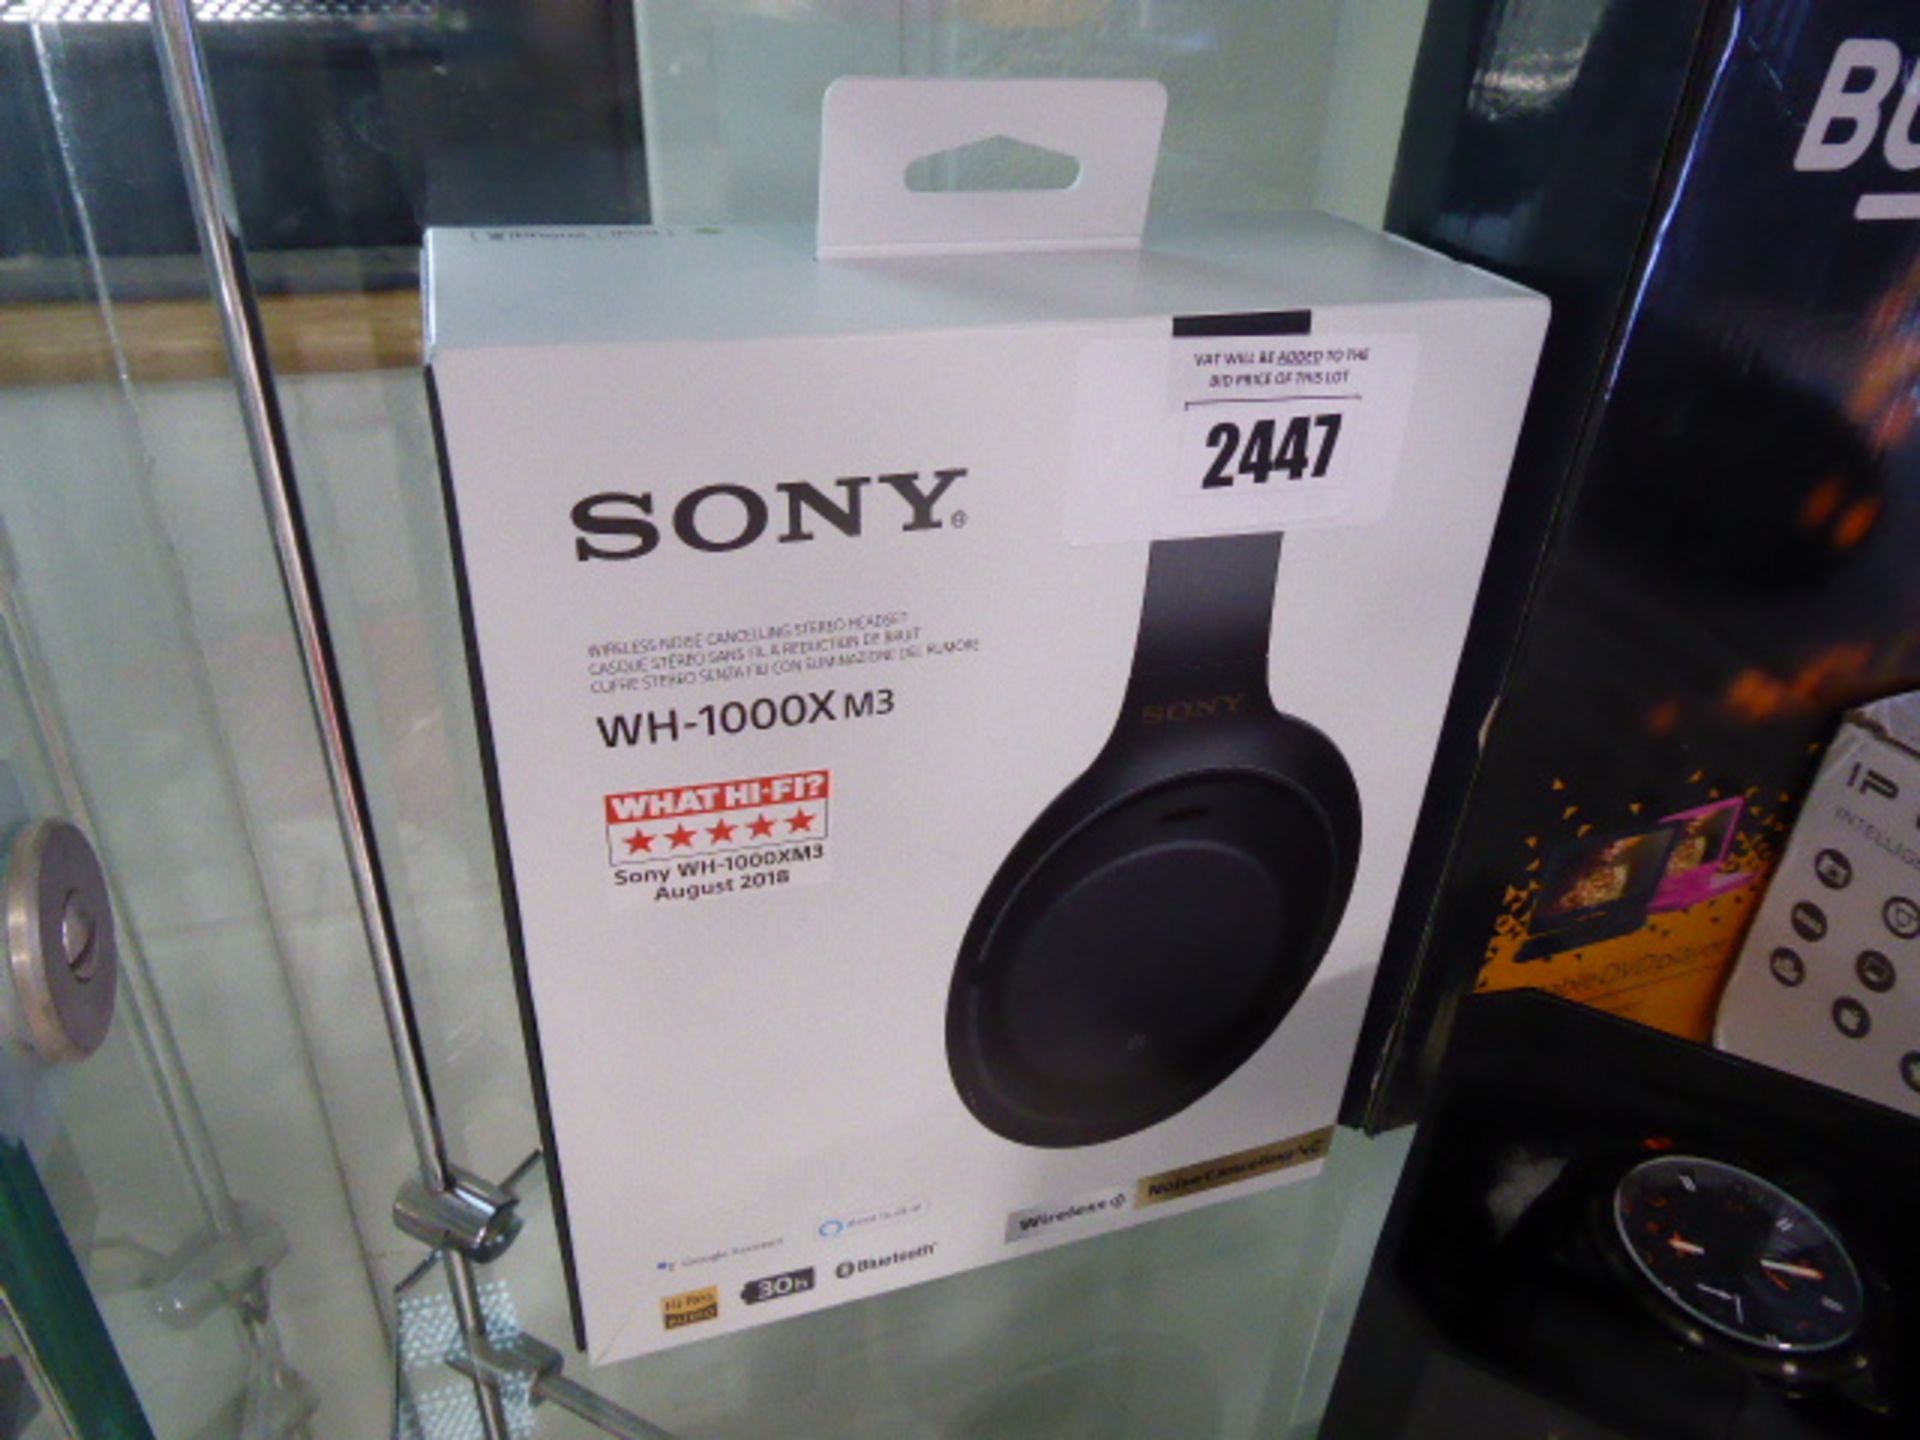 Sony WH-1000X M3 headphones in box